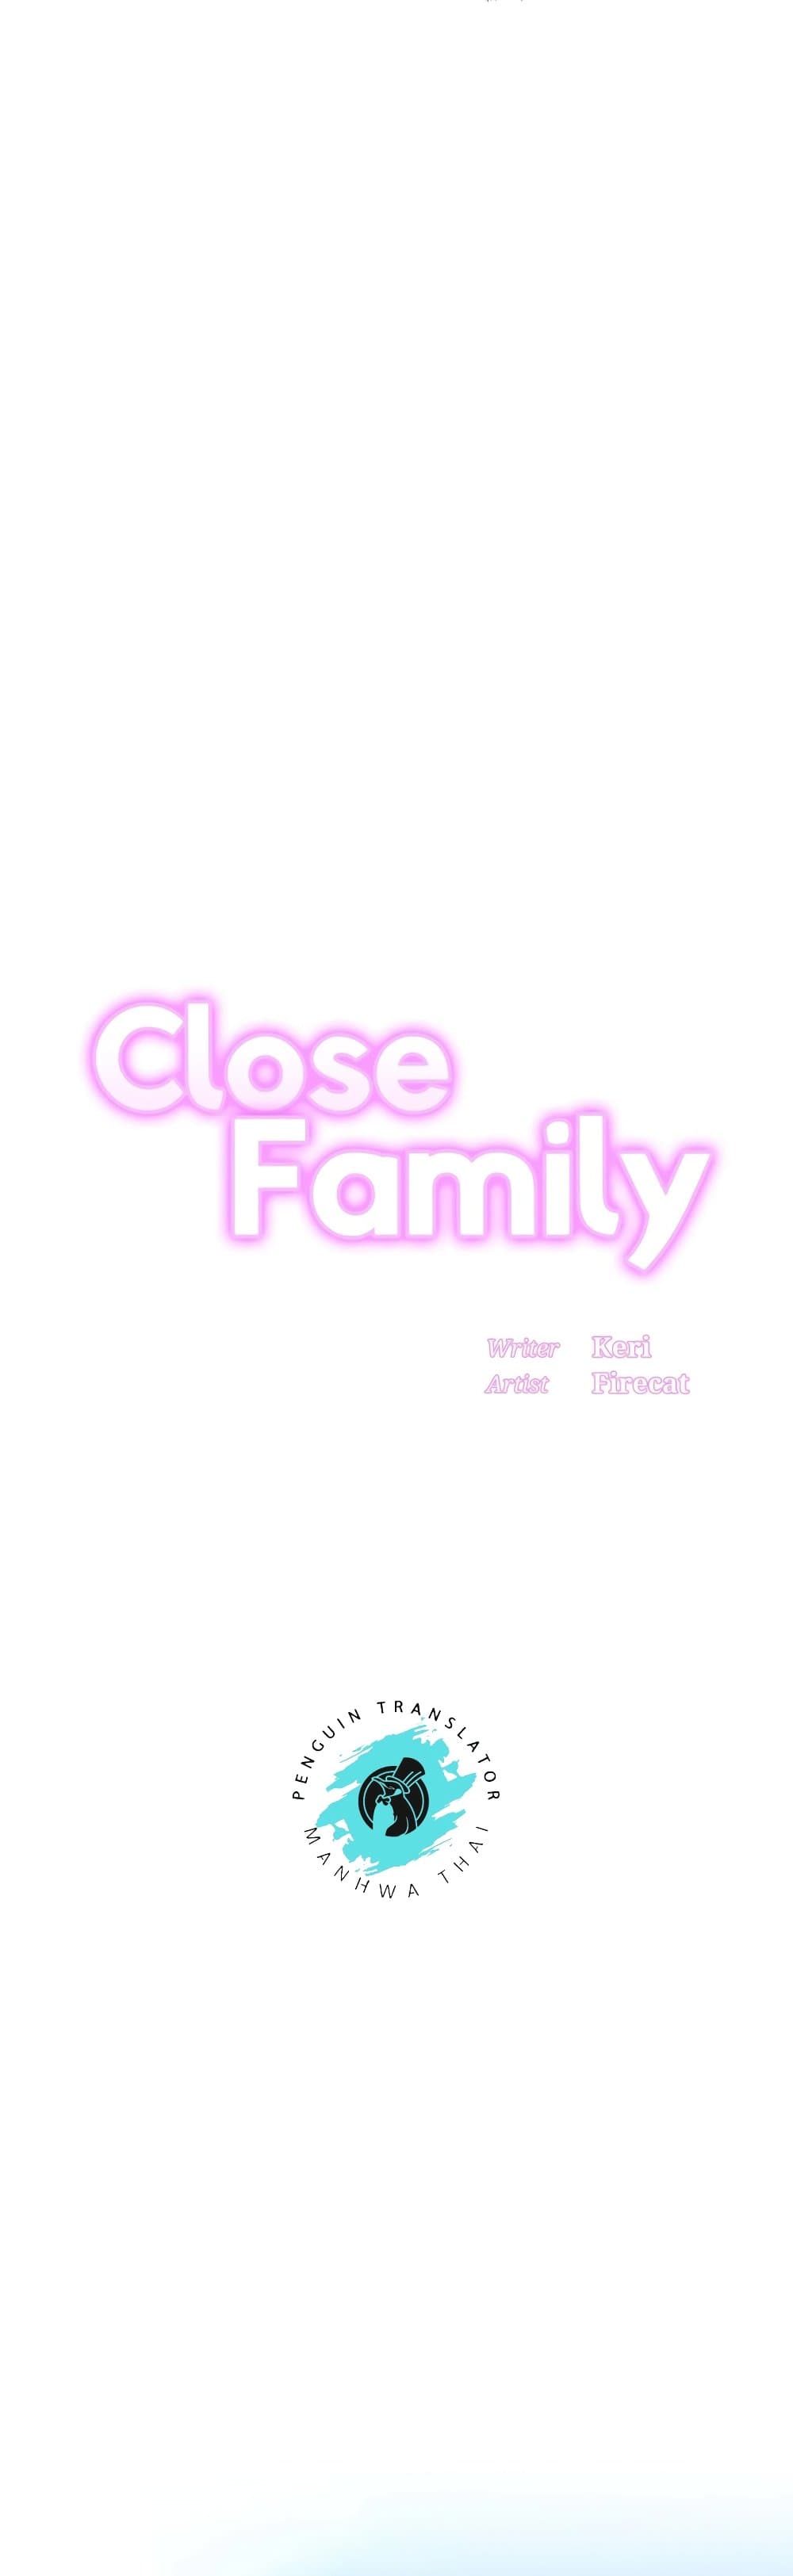 Close Family03